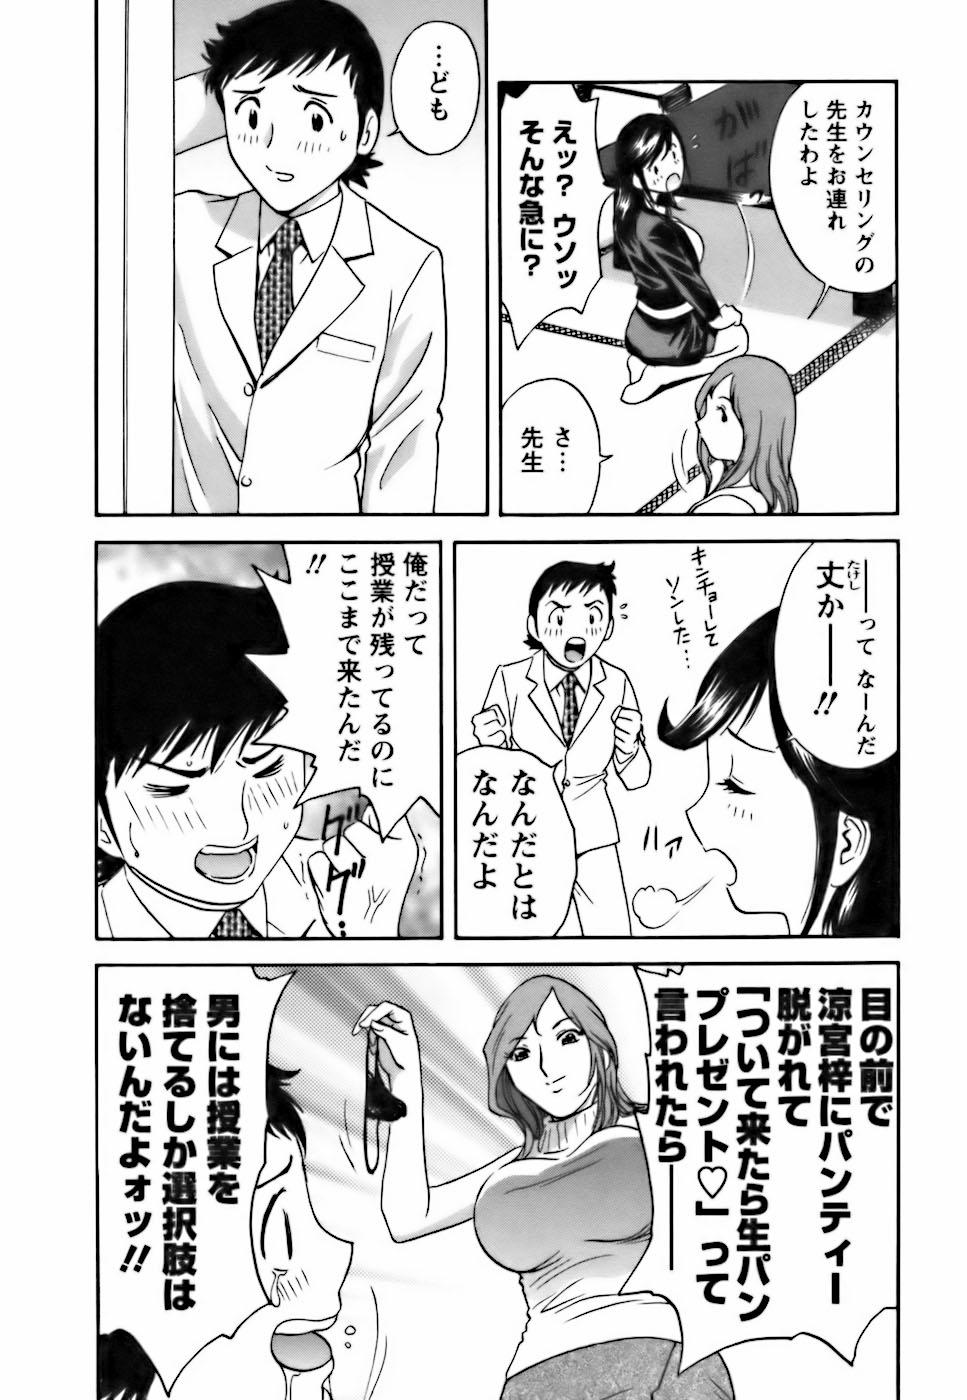 [Hidemaru] Mo-Retsu! Boin Sensei (Boing Boing Teacher) Vol.3 133